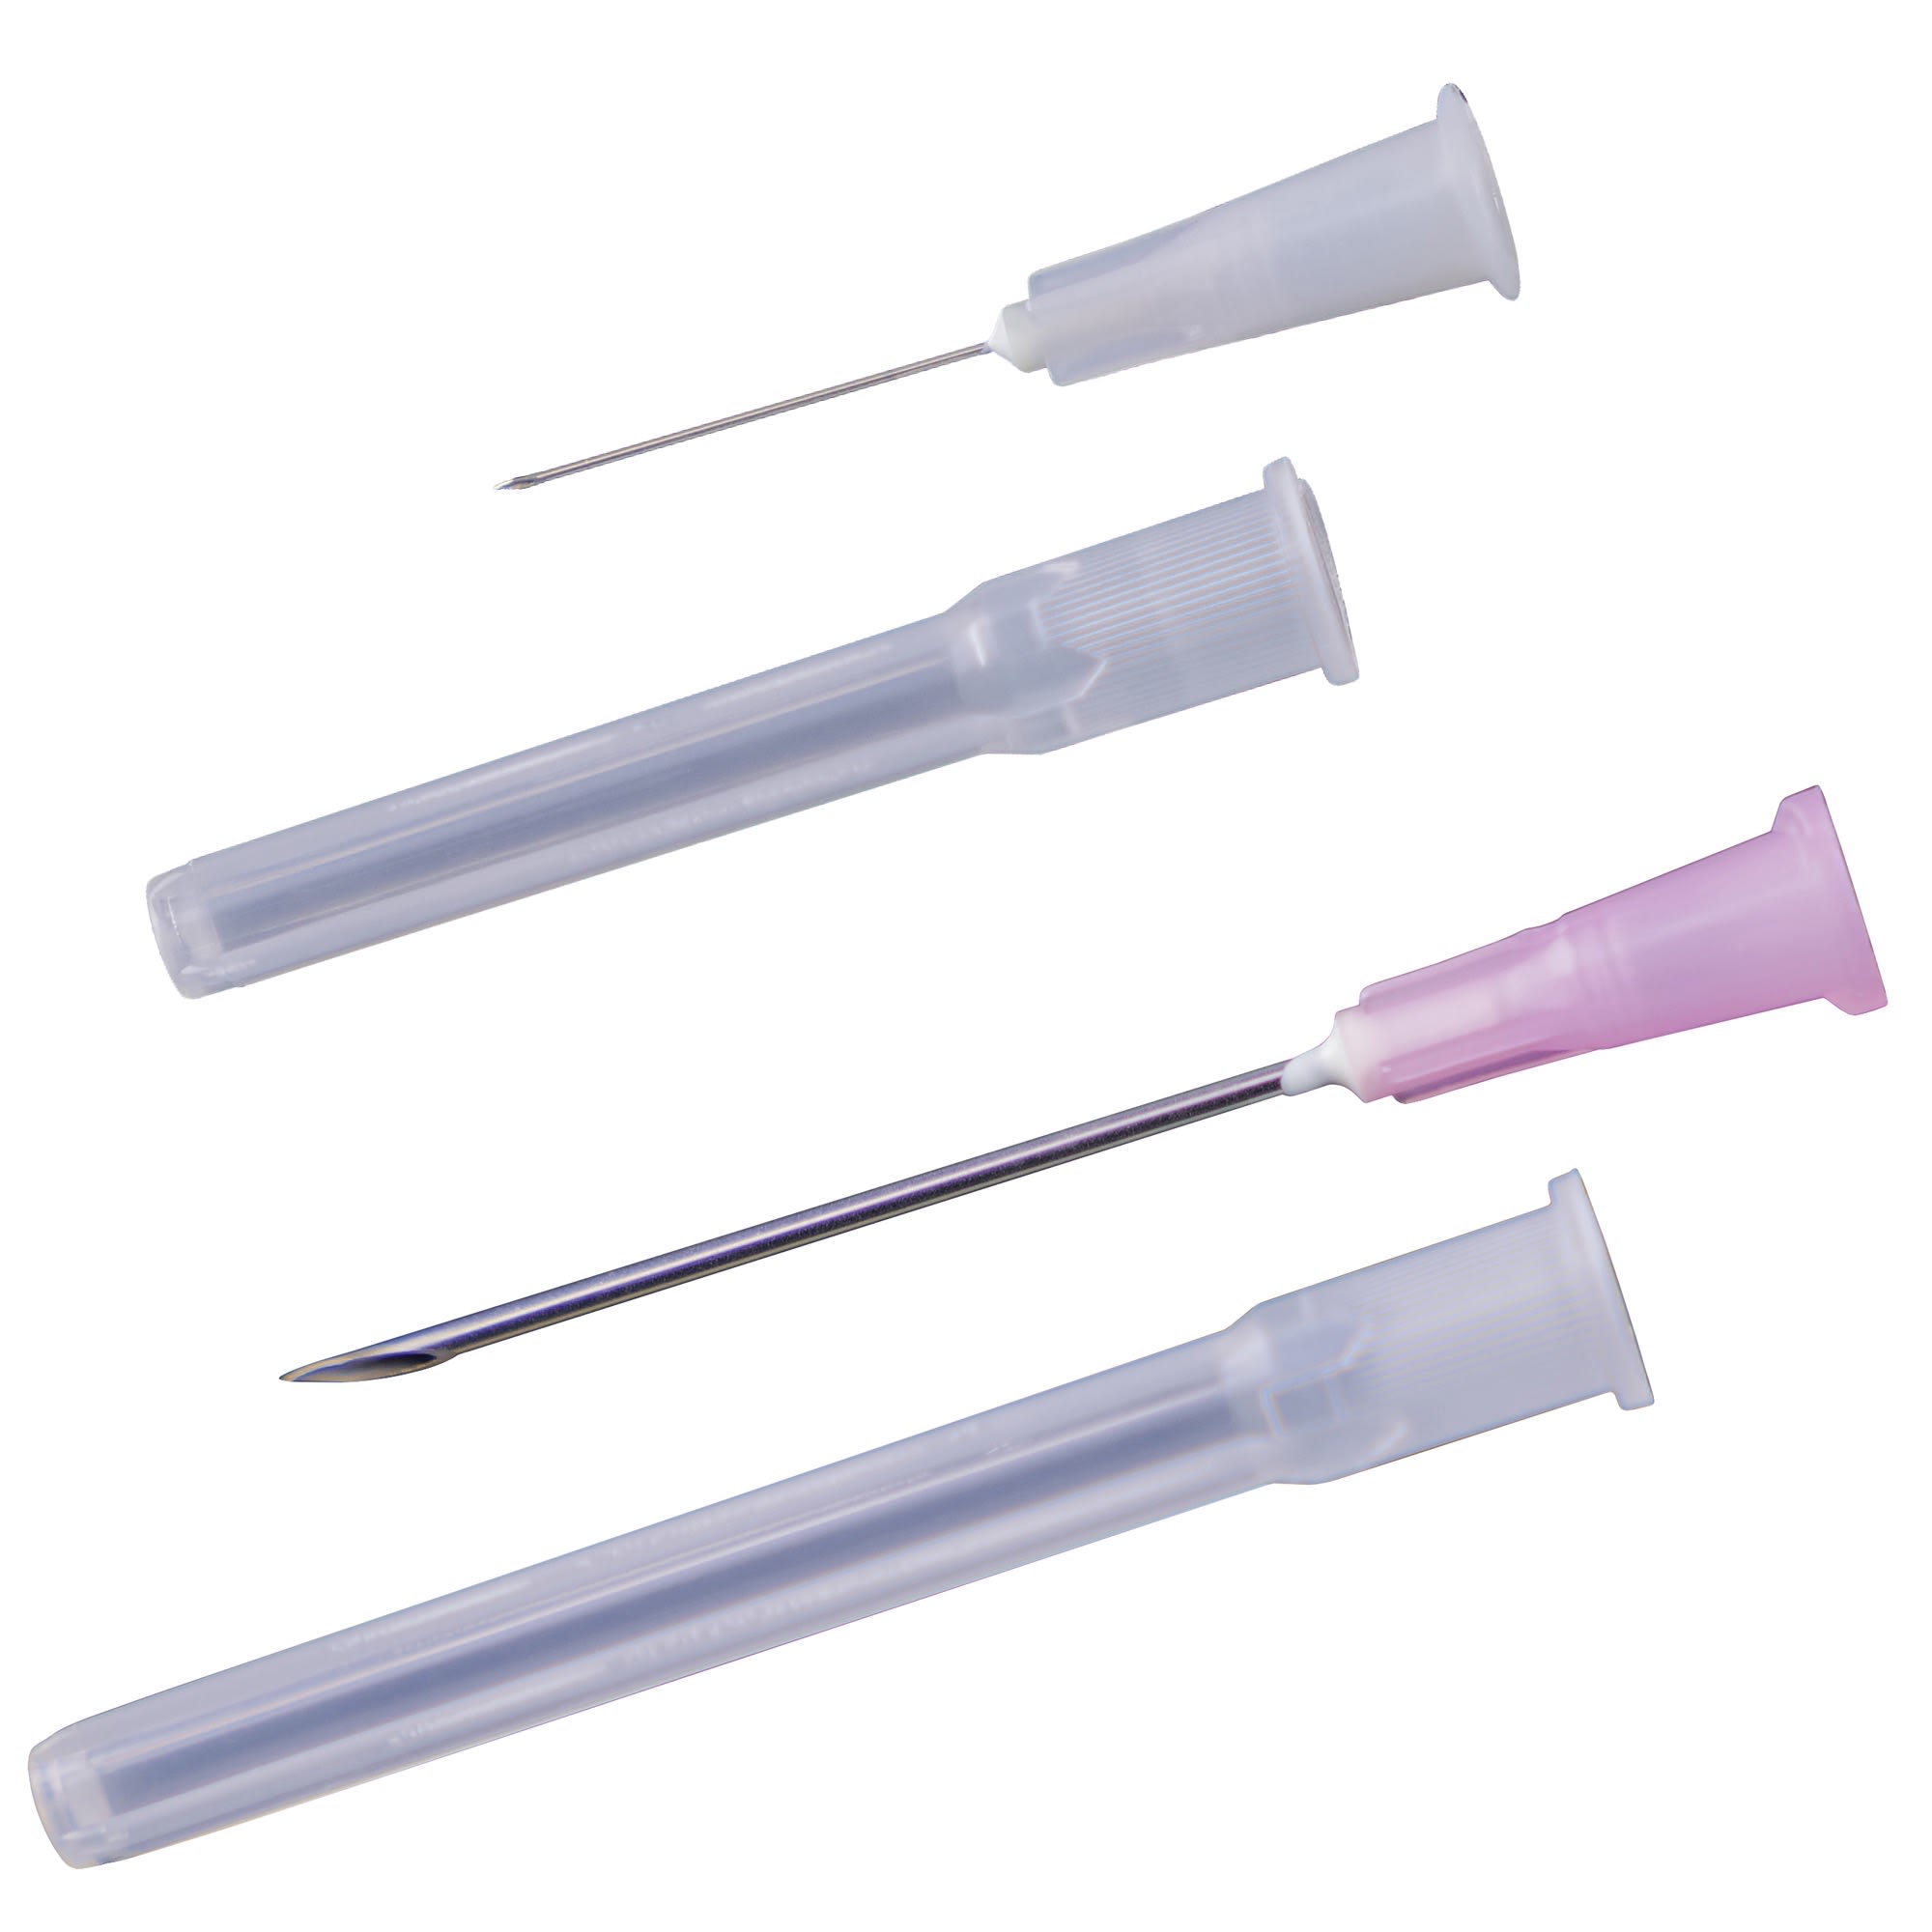 Dosing needles sharp tip